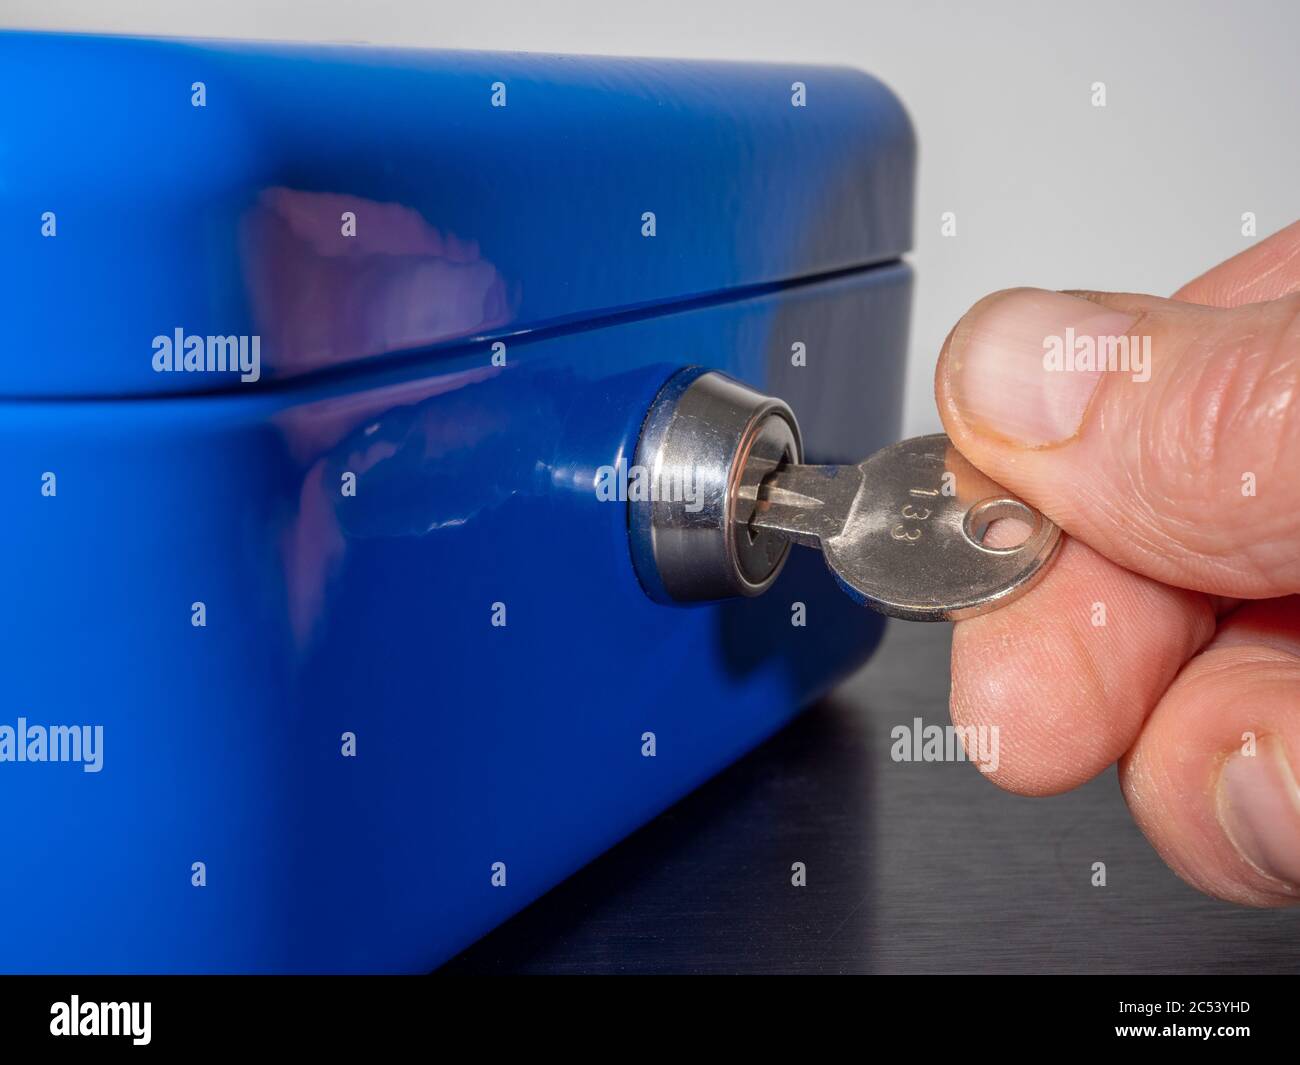 Les doigts d'un homme tournant la clé numérotée dans la serrure d'un coffre-fort/coffre-fort en métal peint en bleu. Banque D'Images